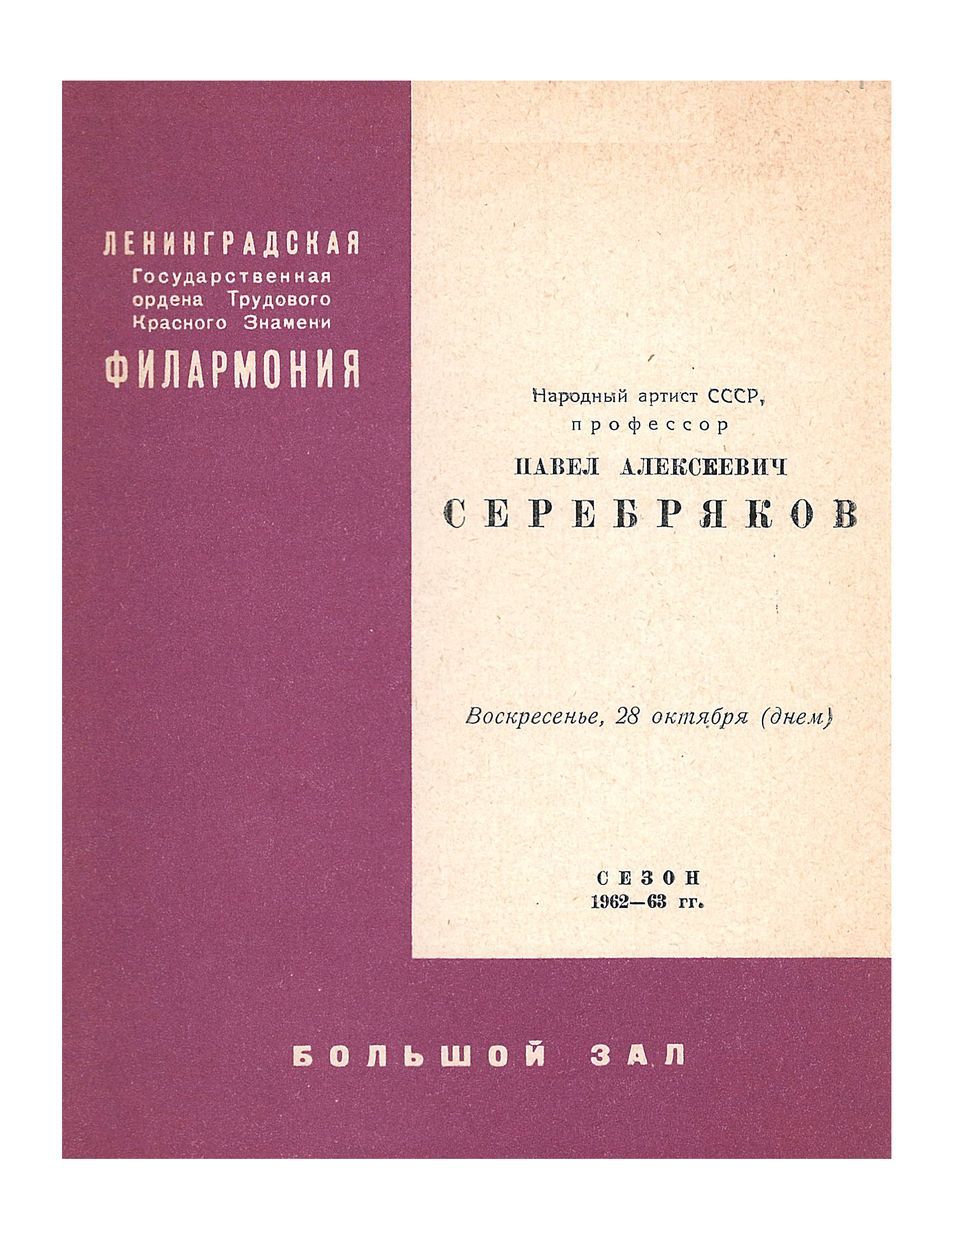 Фортепианный концерт
Павел Серебряков